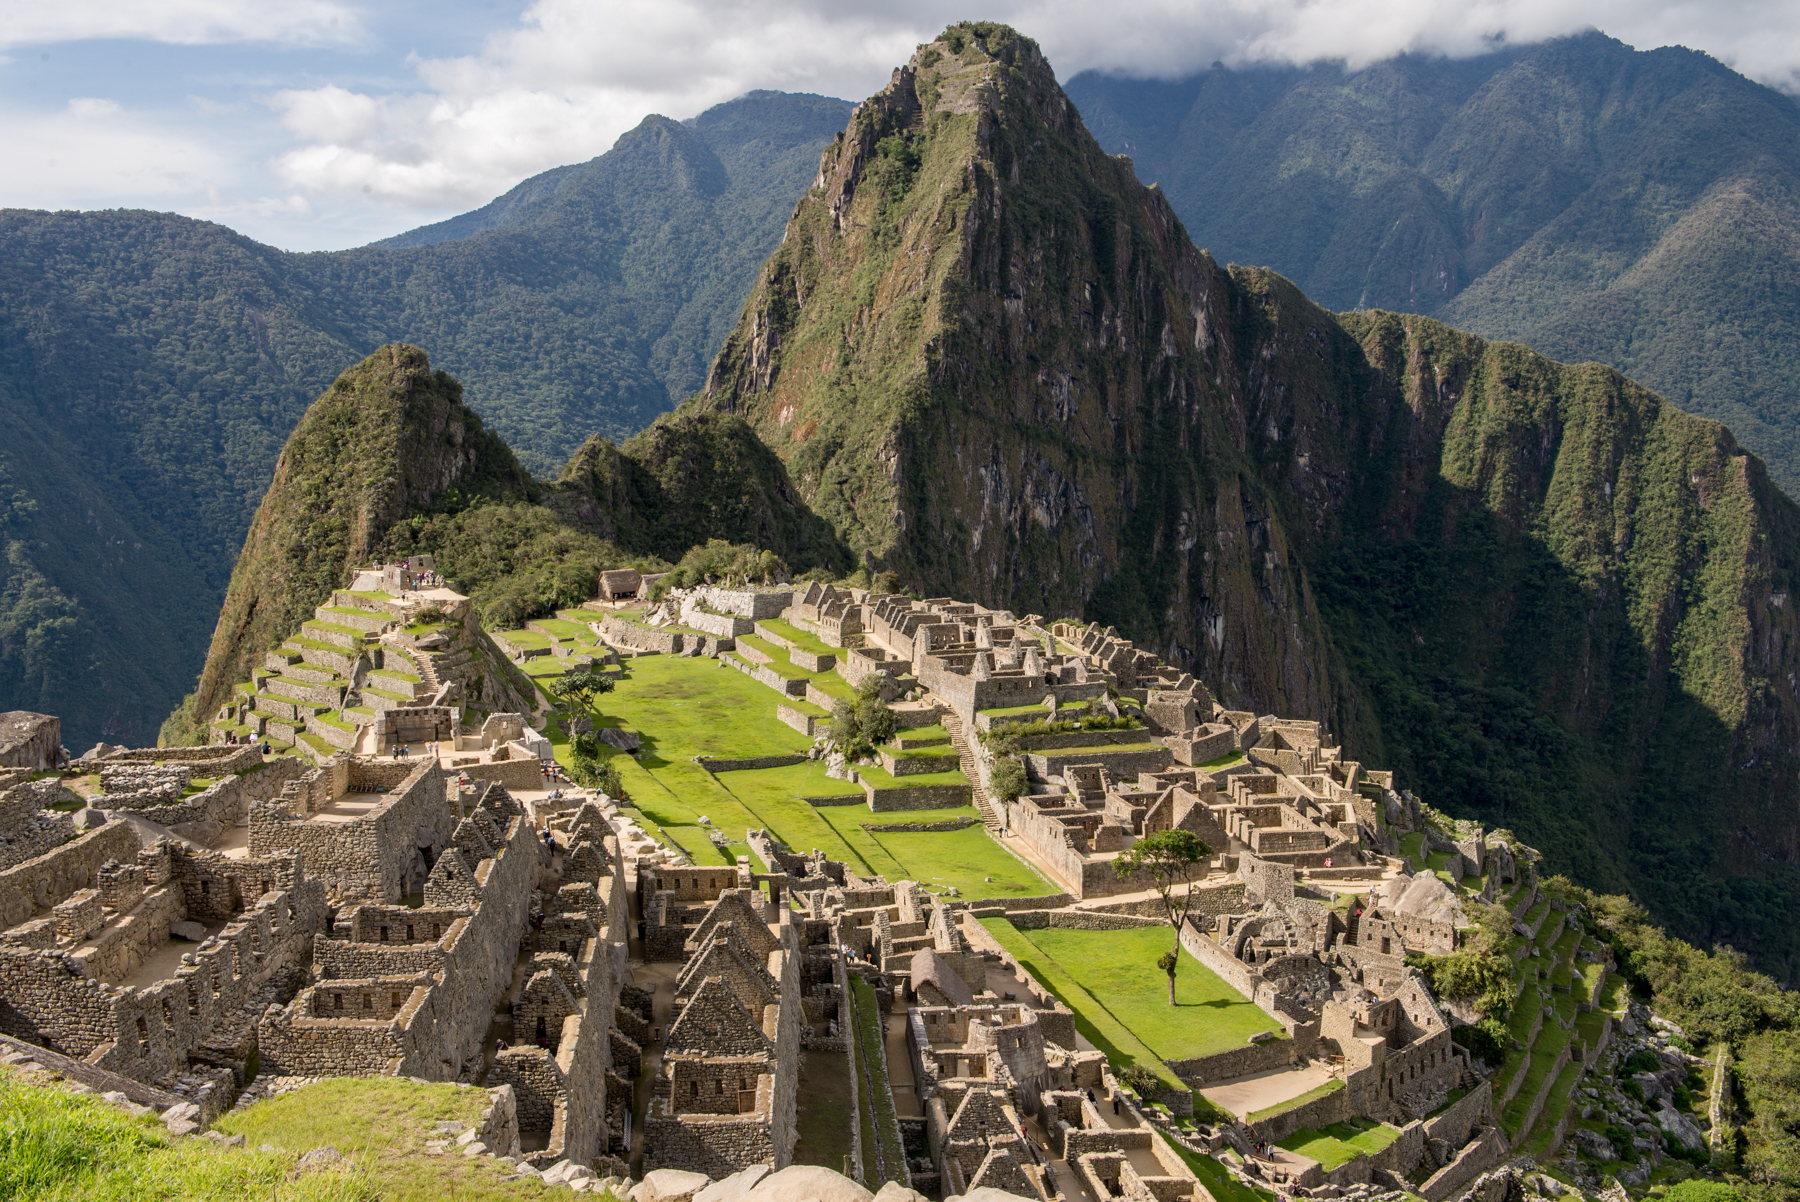 Machu Picchu in photos